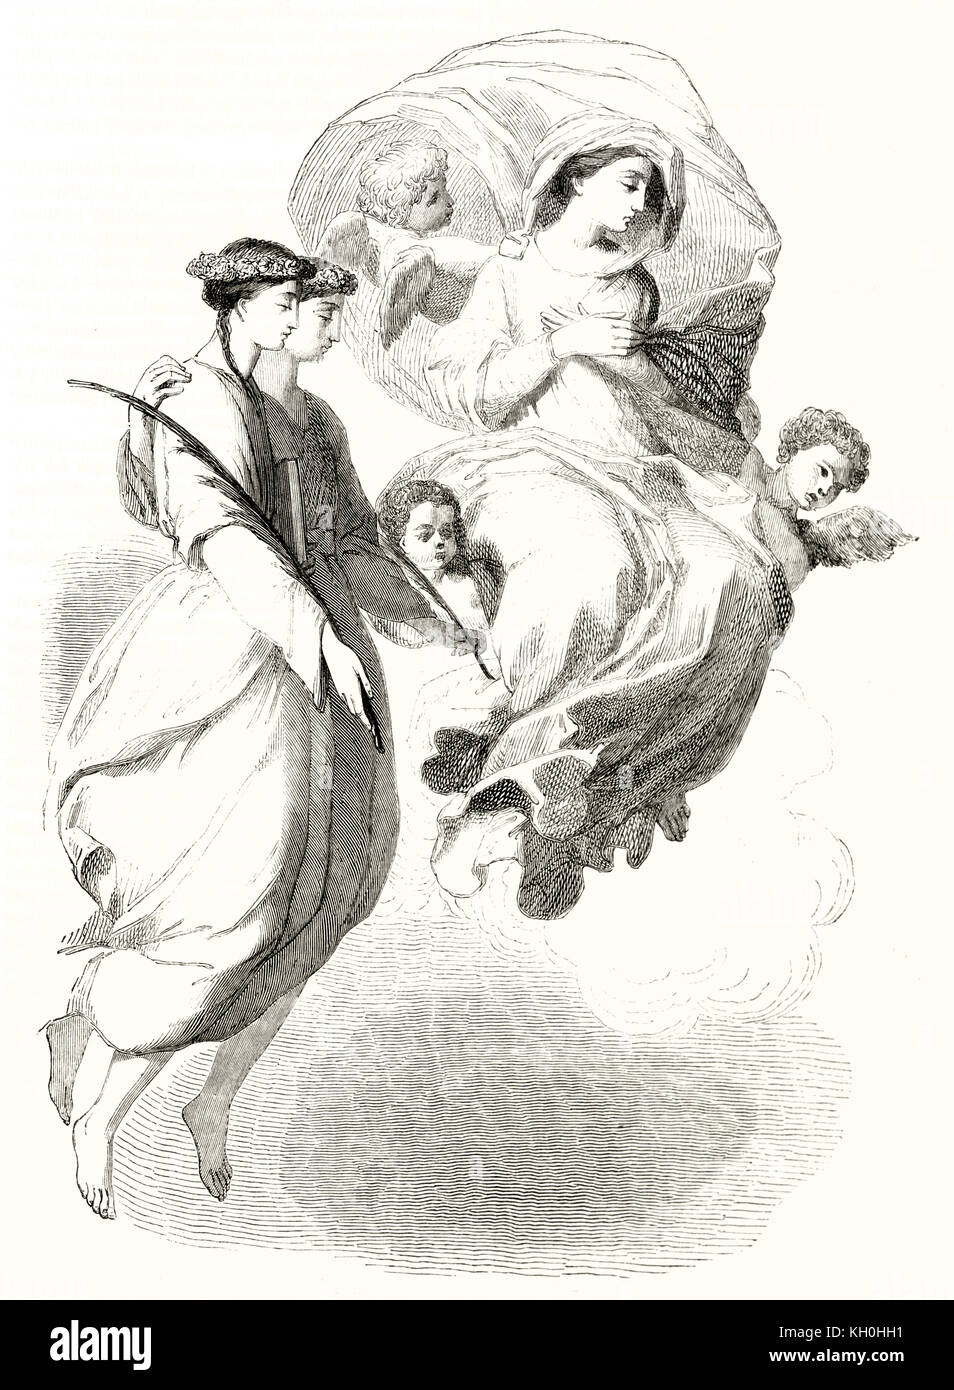 Reprocuction d'une peinture par le seur illustrant Saint Marguerite apparition (détail). Publ. sur Magasin Pittoresque, Paris, 1847 Banque D'Images